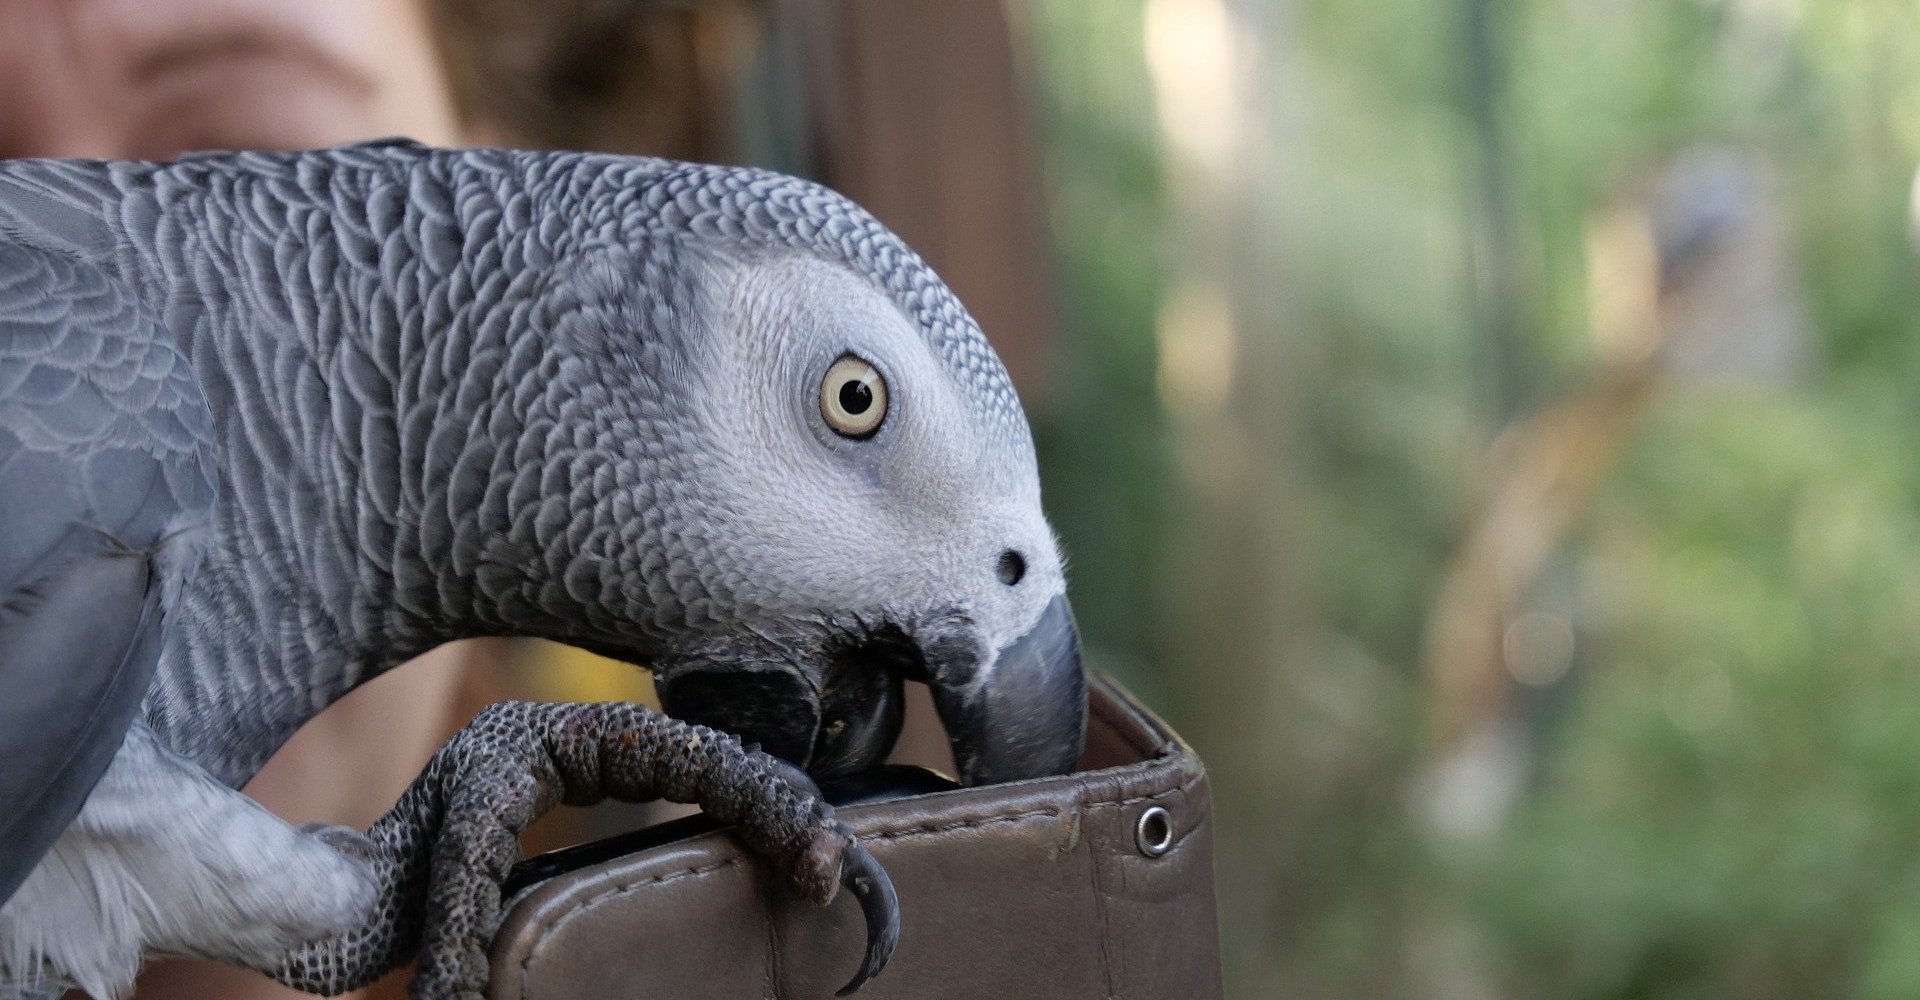 En papegøje har Amazon til at afspille musik og bestille mad | Connery